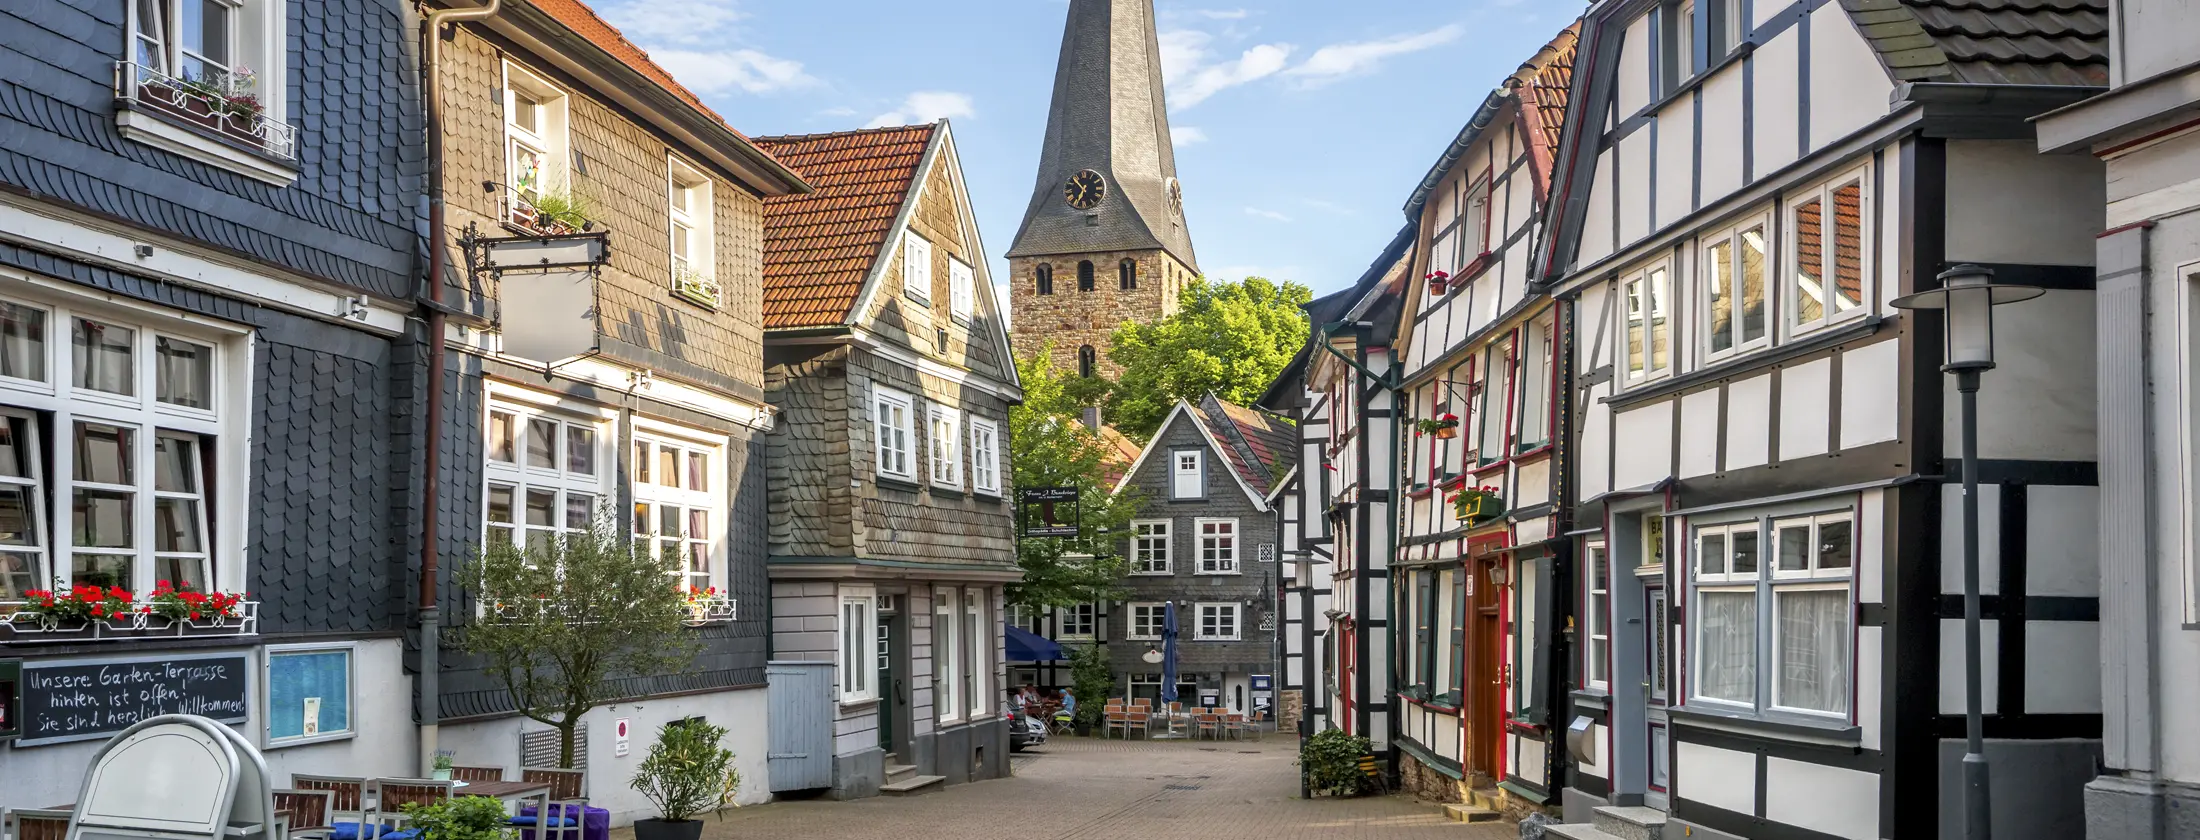 Blick in die Altstadt von Hattingen